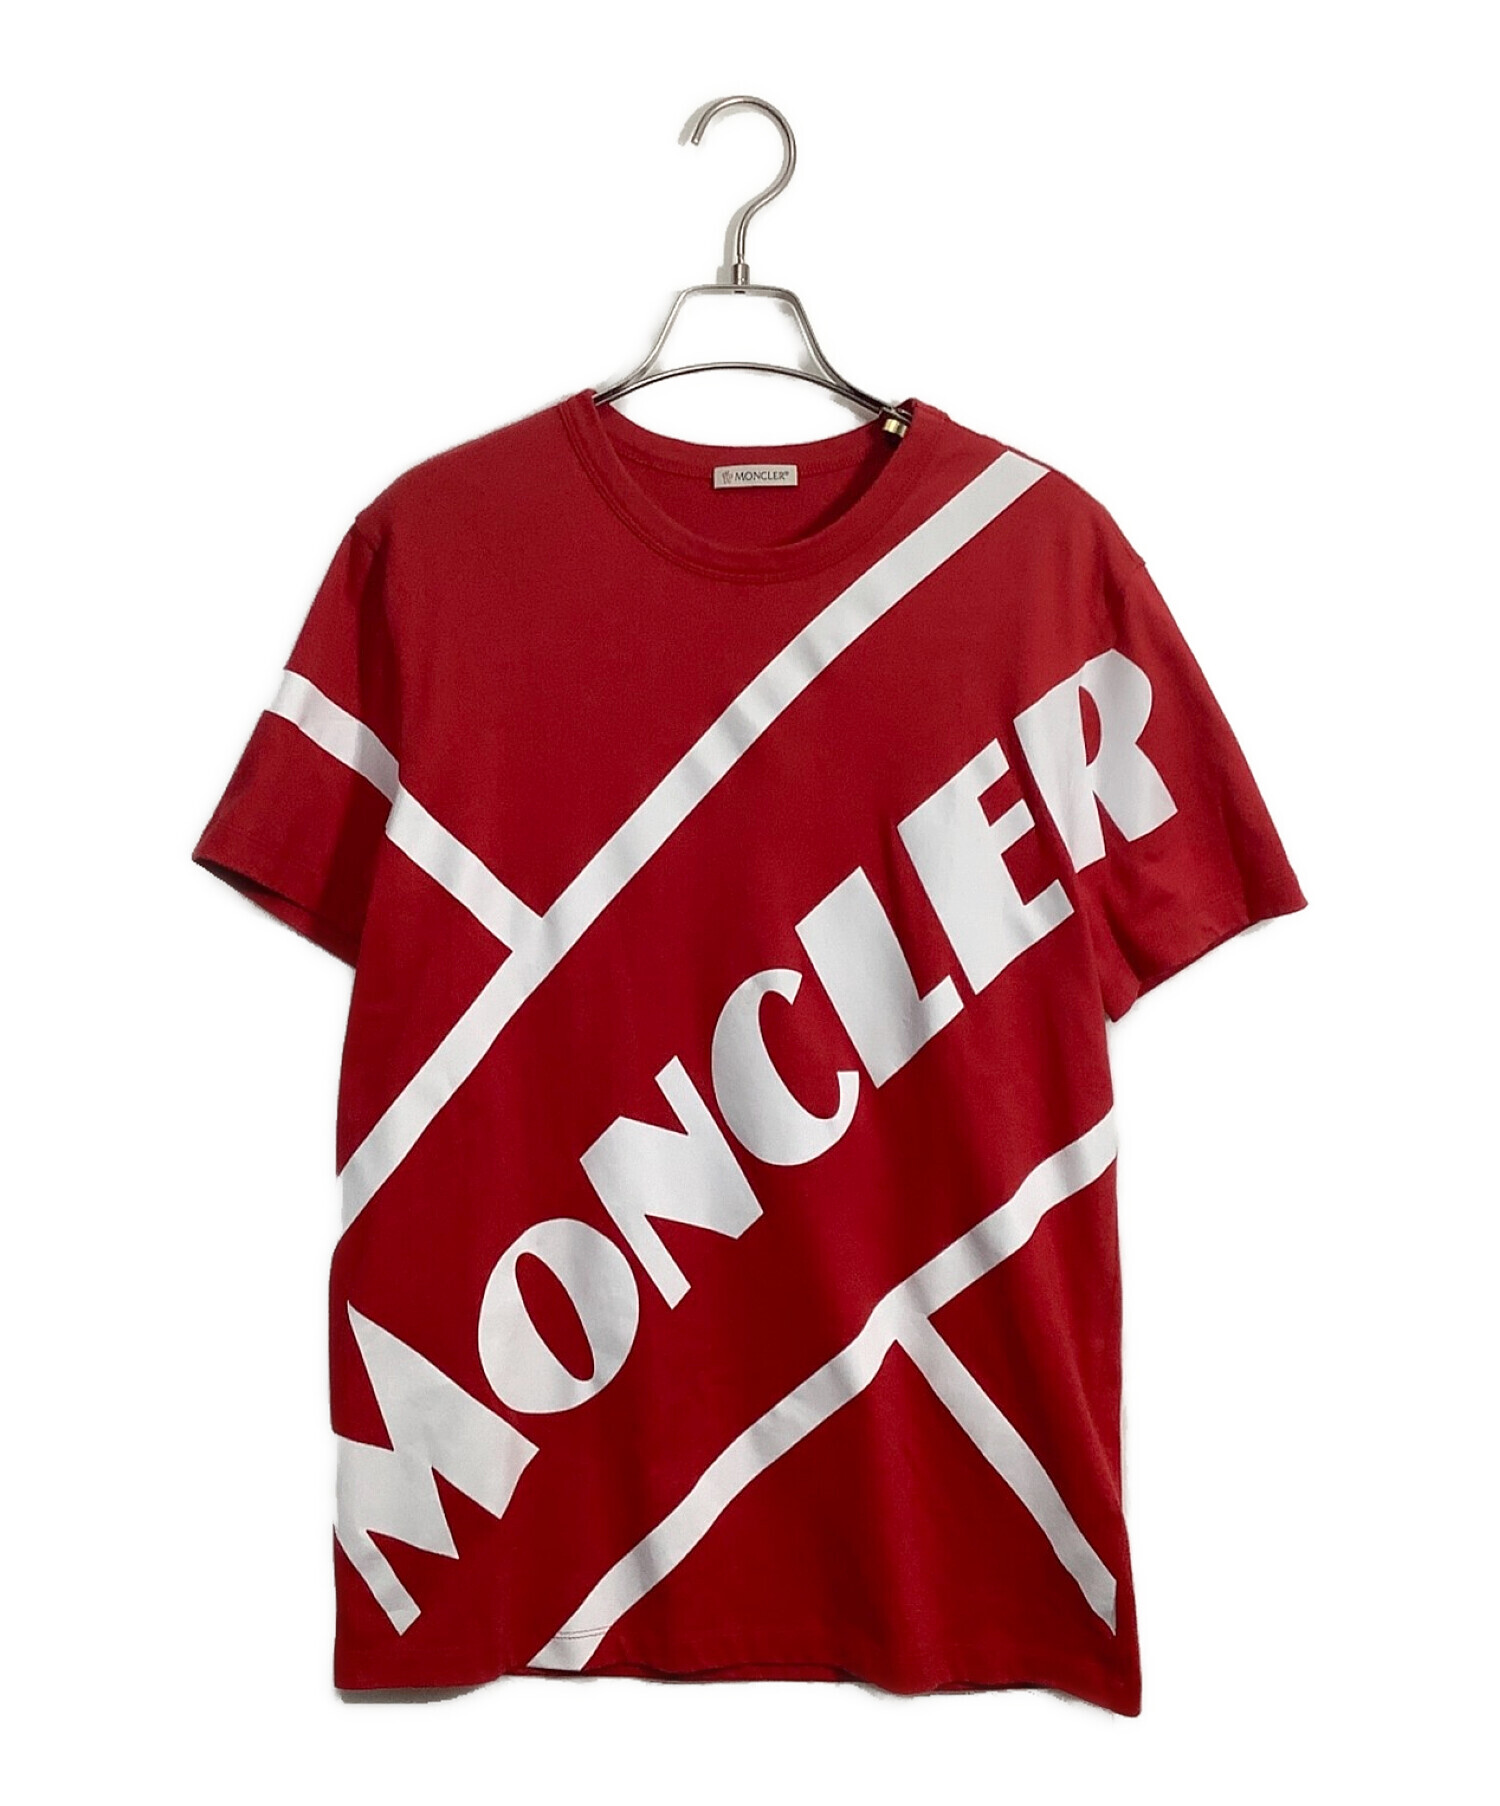 MONCLER (モンクレール) MAGLIA T-SHIRT レッド×ホワイト サイズ:M